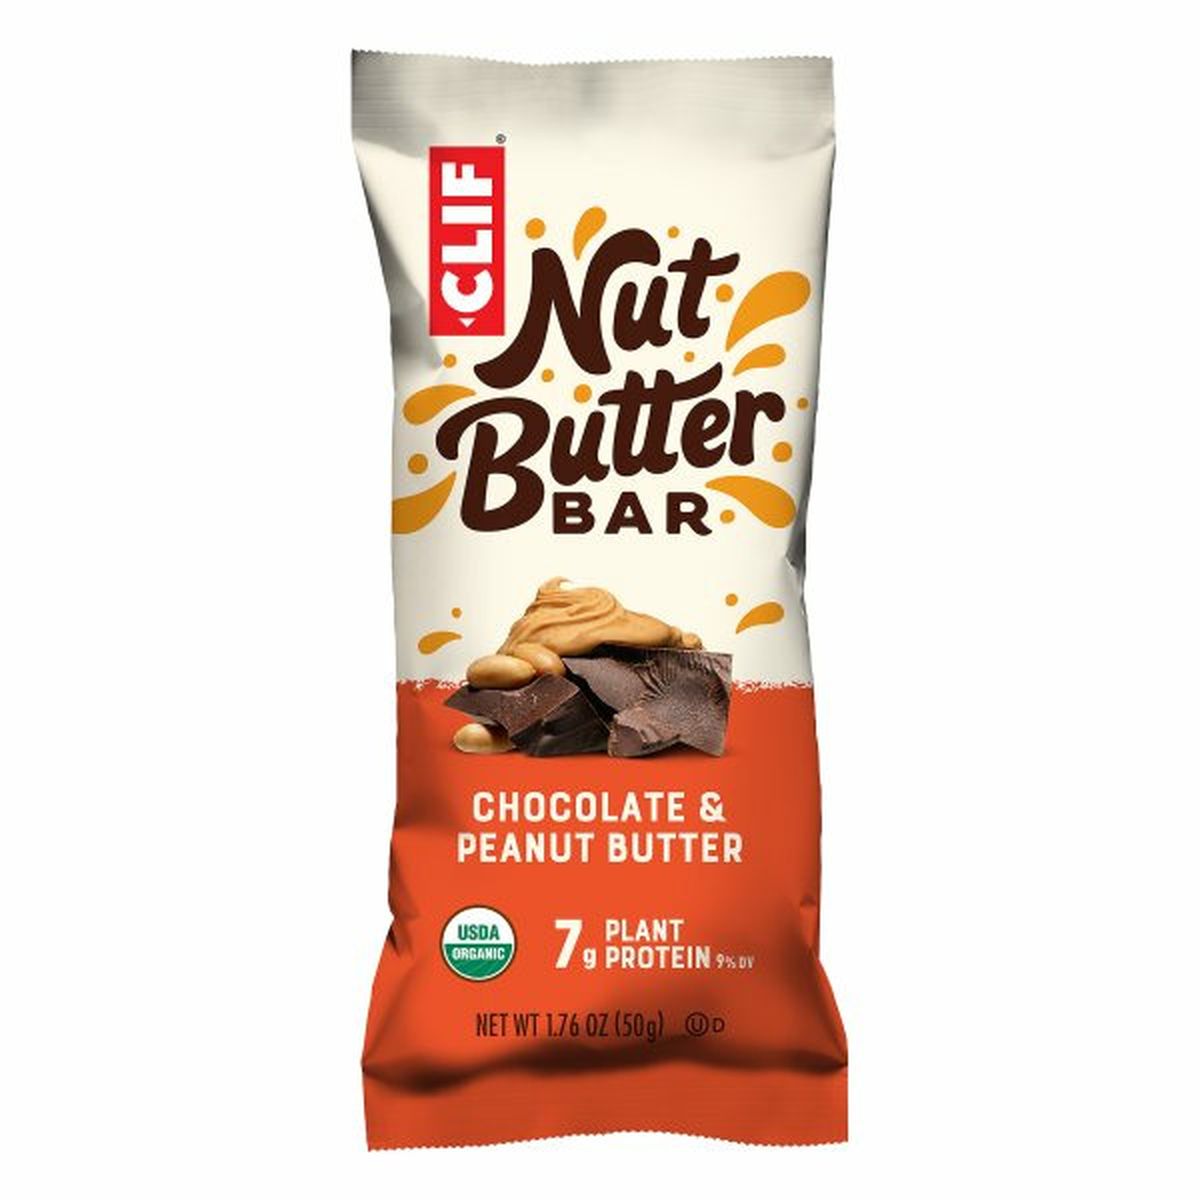 Calories in CLIF BAR Nut Butter Bar, Chocolate & Peanut Butter